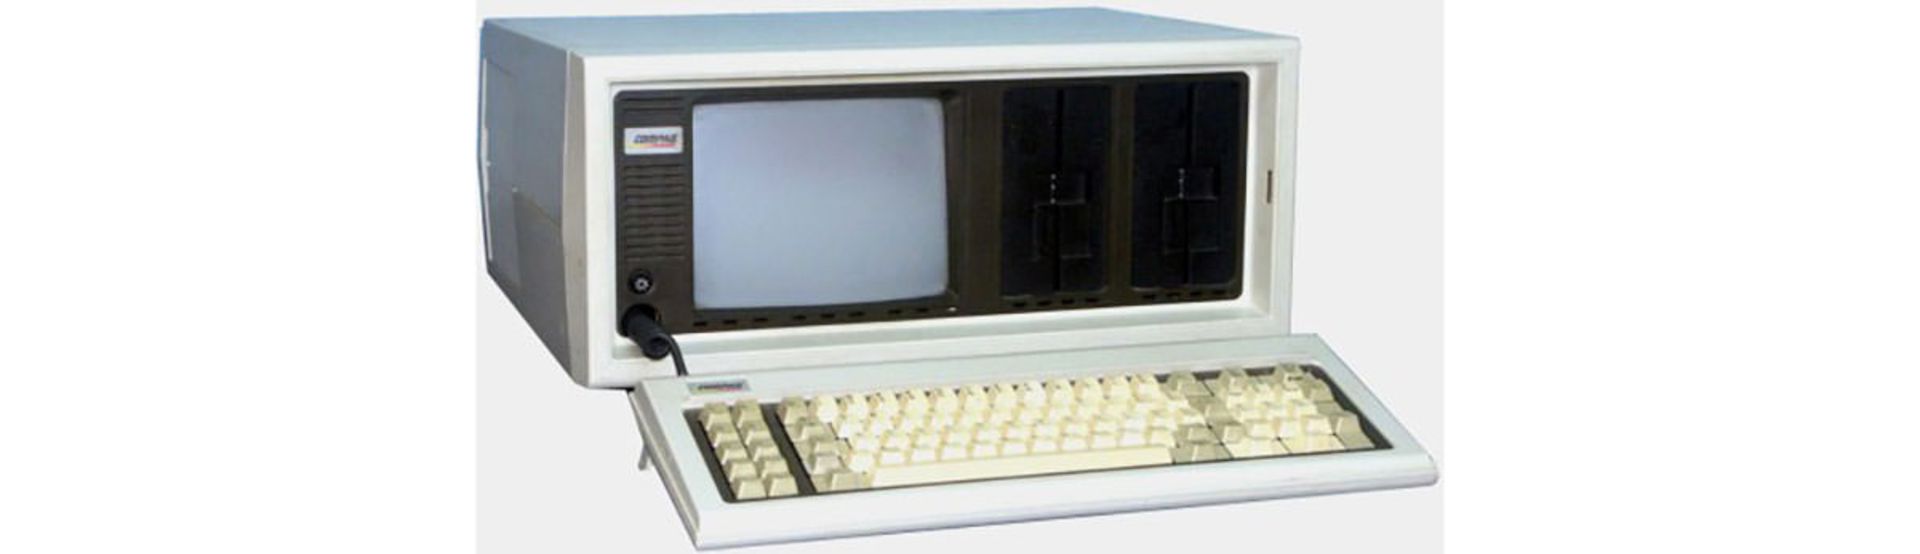  کامپیوتر کامپک Compaq Portable